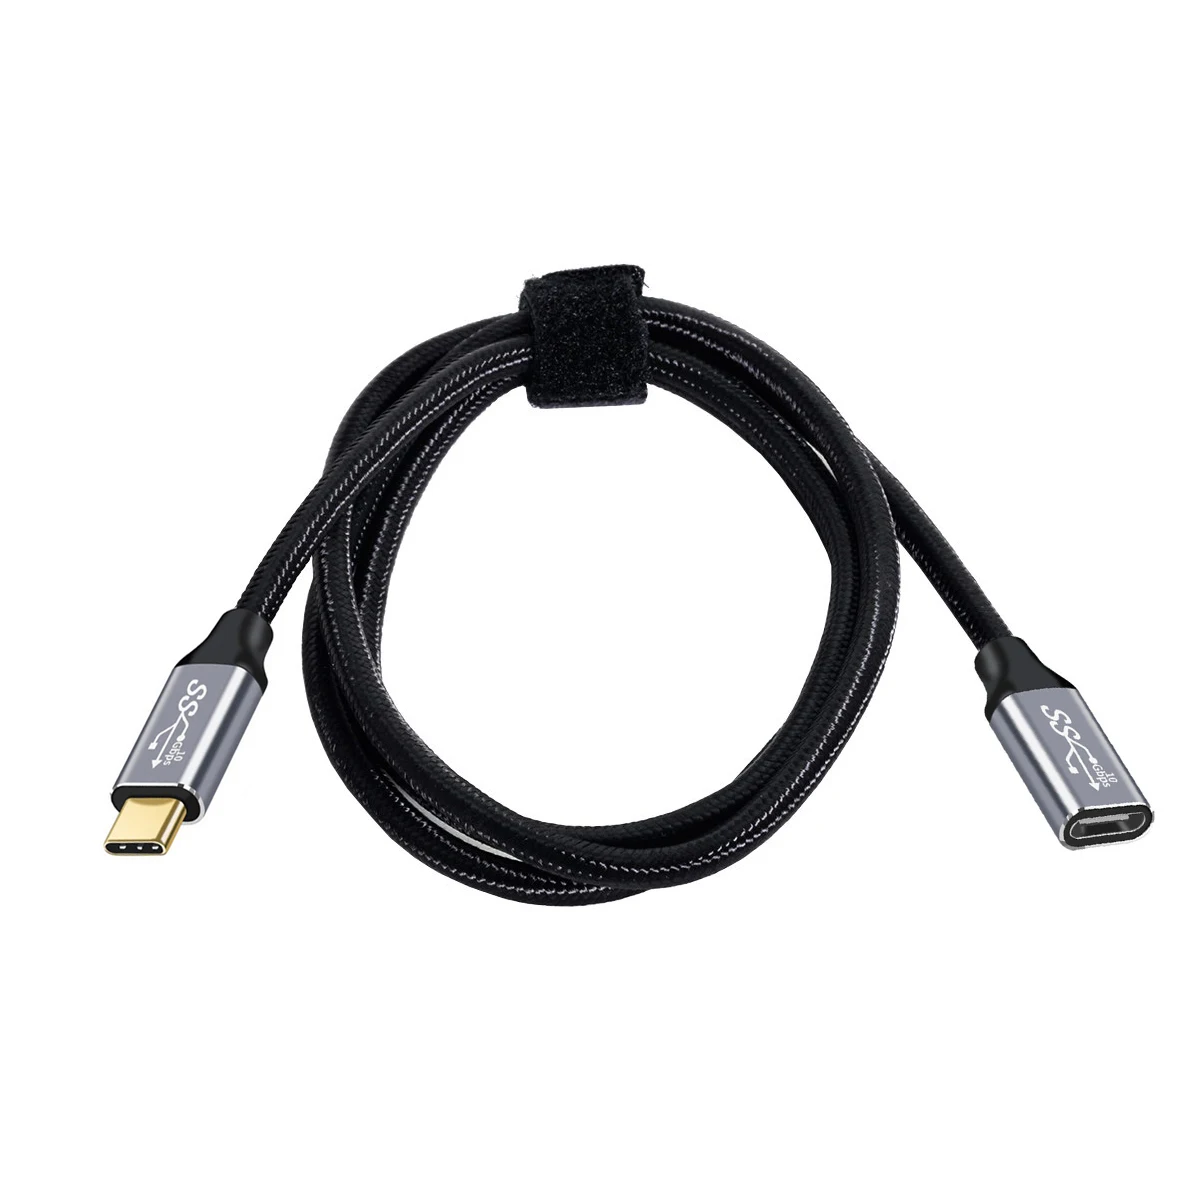 Cablecc USB-C USB 3.1 Type-C Удлинитель Кабель Передачи Данных 10 Гбит/с 100 Вт с чехлом для ноутбука